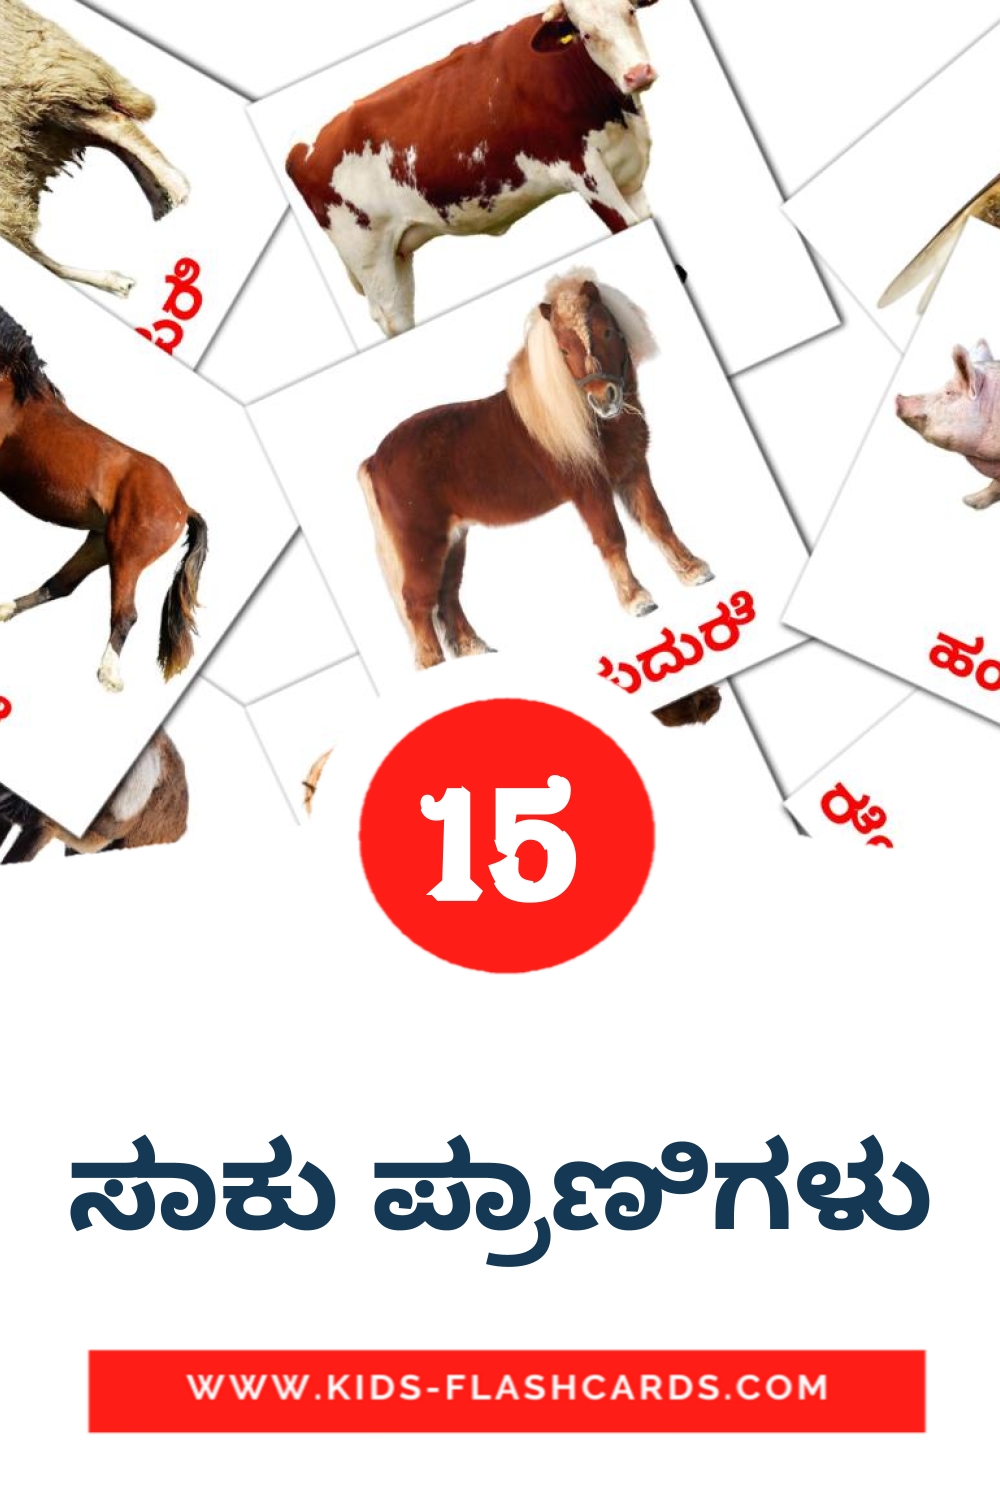 15 carte illustrate di ಸಾಕು ಪ್ರಾಣಿಗಳು per la scuola materna in kannada